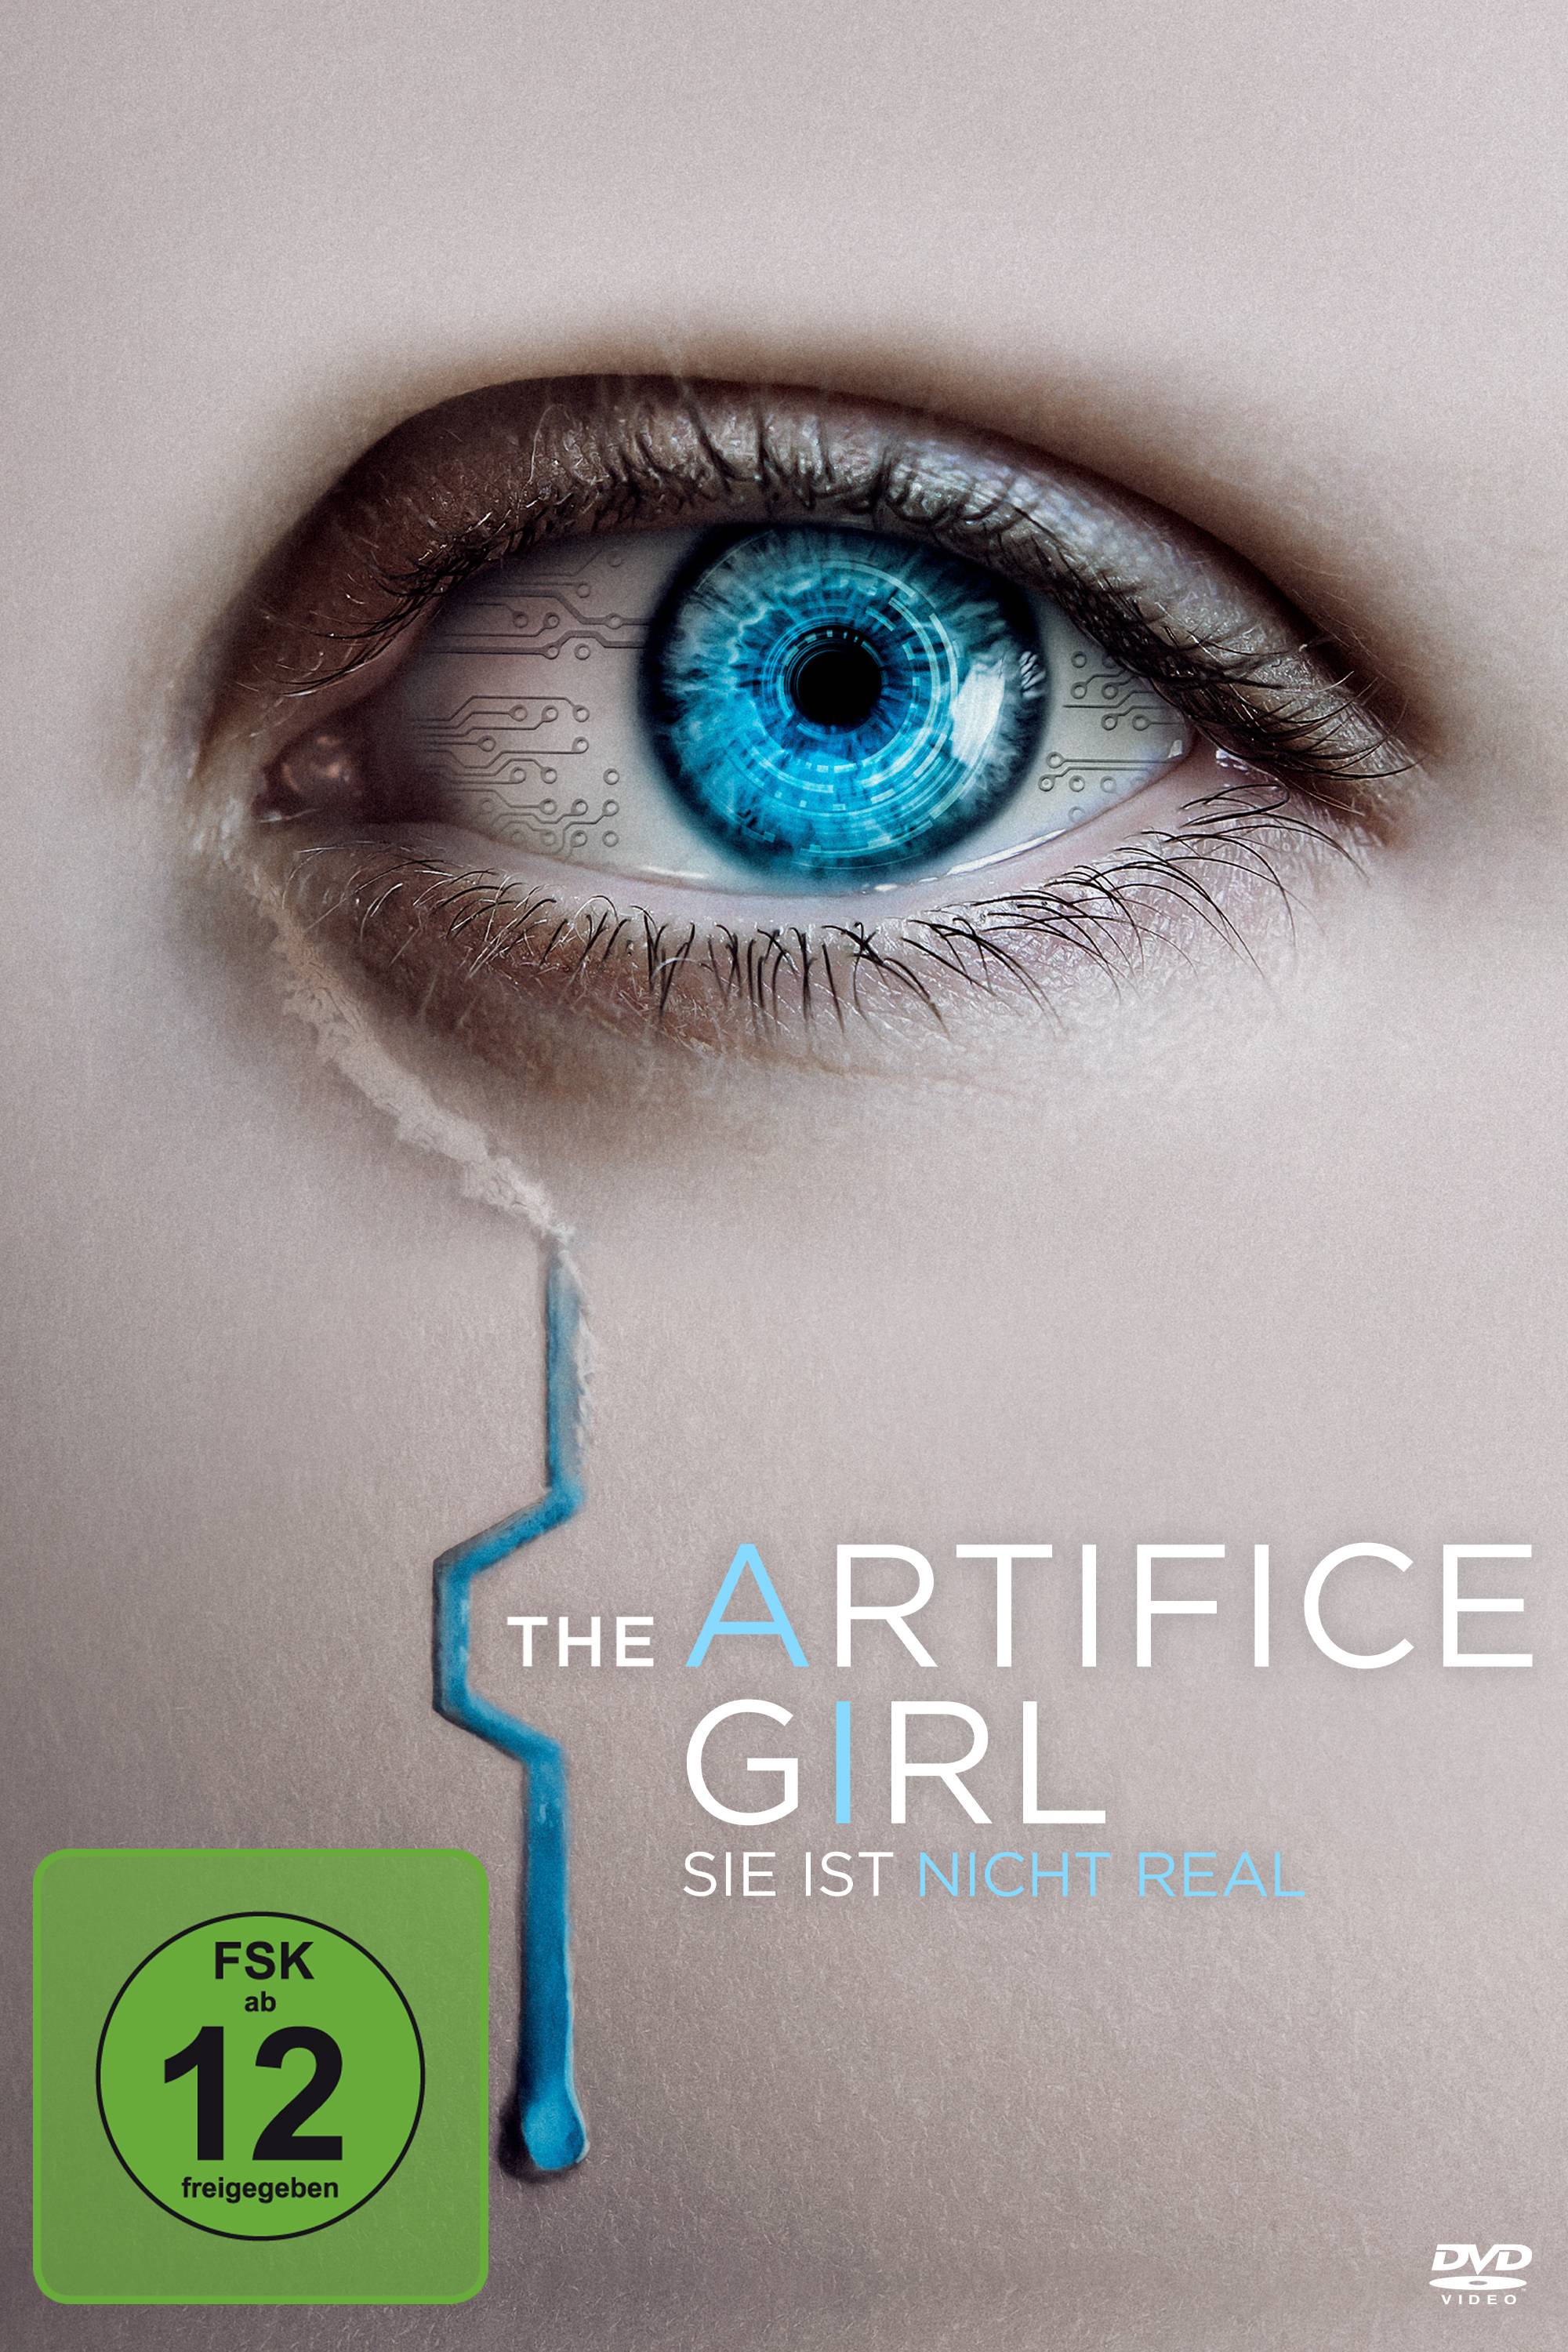 The Artifice Girl - Sie ist nicht real